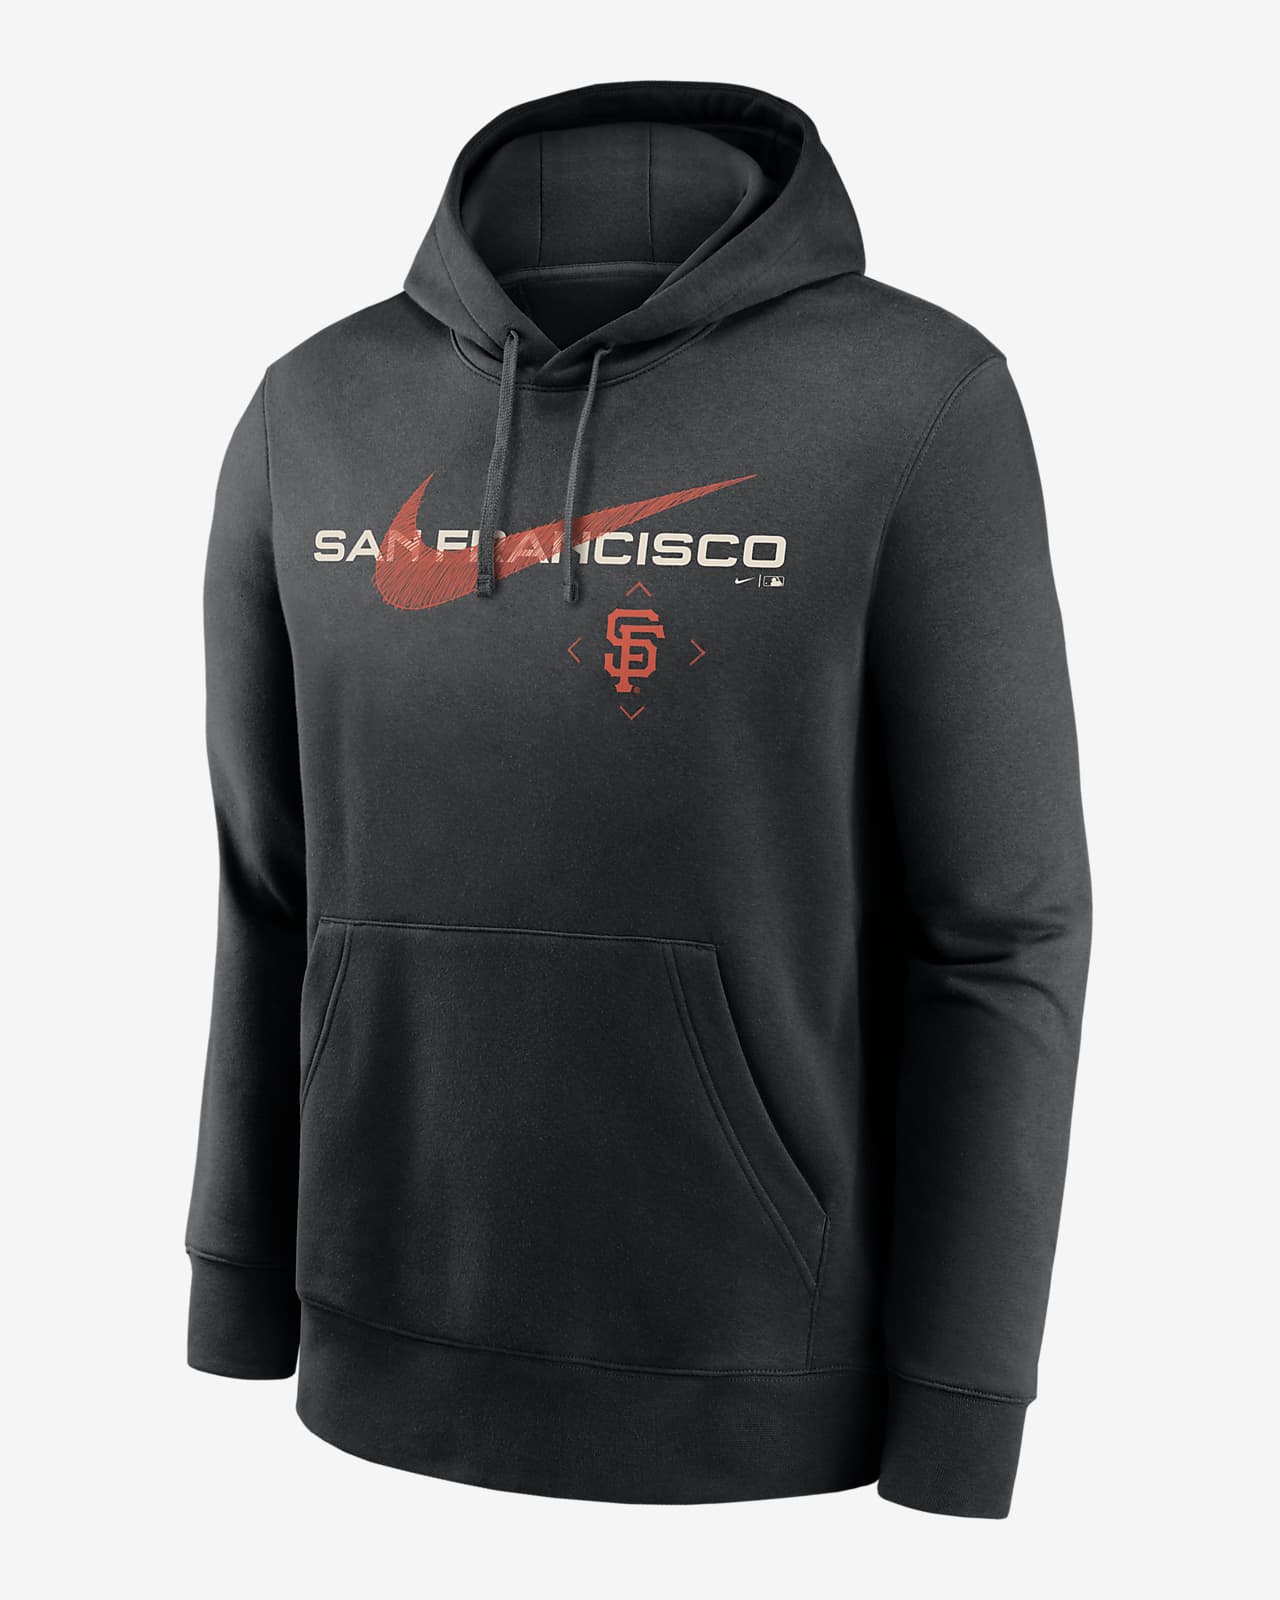 San Francisco Giants Sweatshirt, Giants Hoodies, Fleece